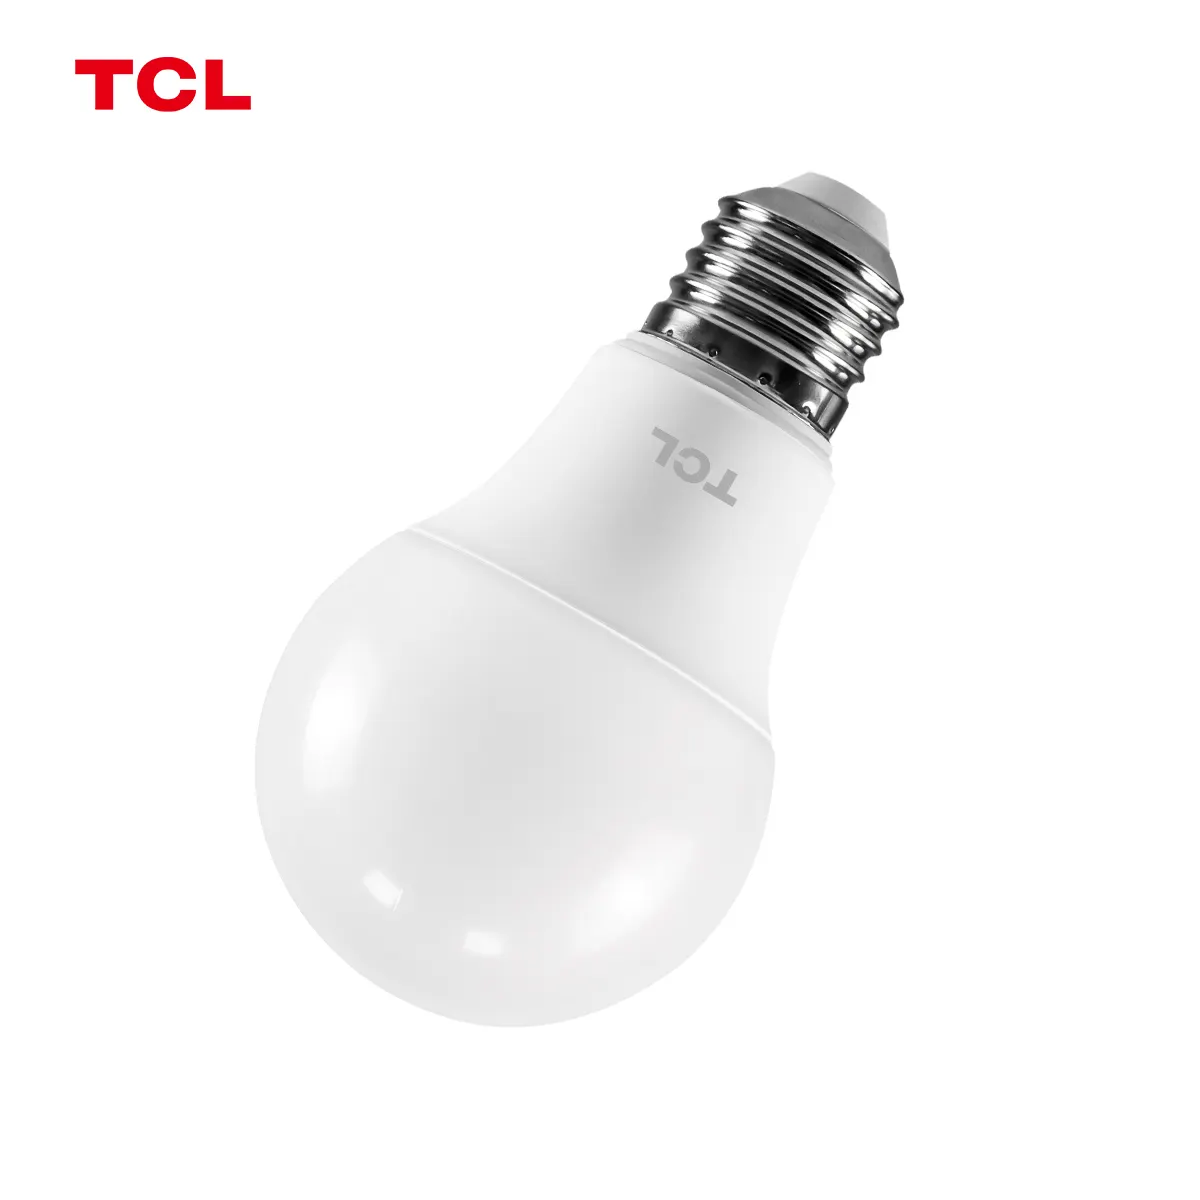 Lâmpada LED de baixo preço por atacado, outros fabricantes de lâmpadas de iluminação na China, lâmpada LED para uso doméstico